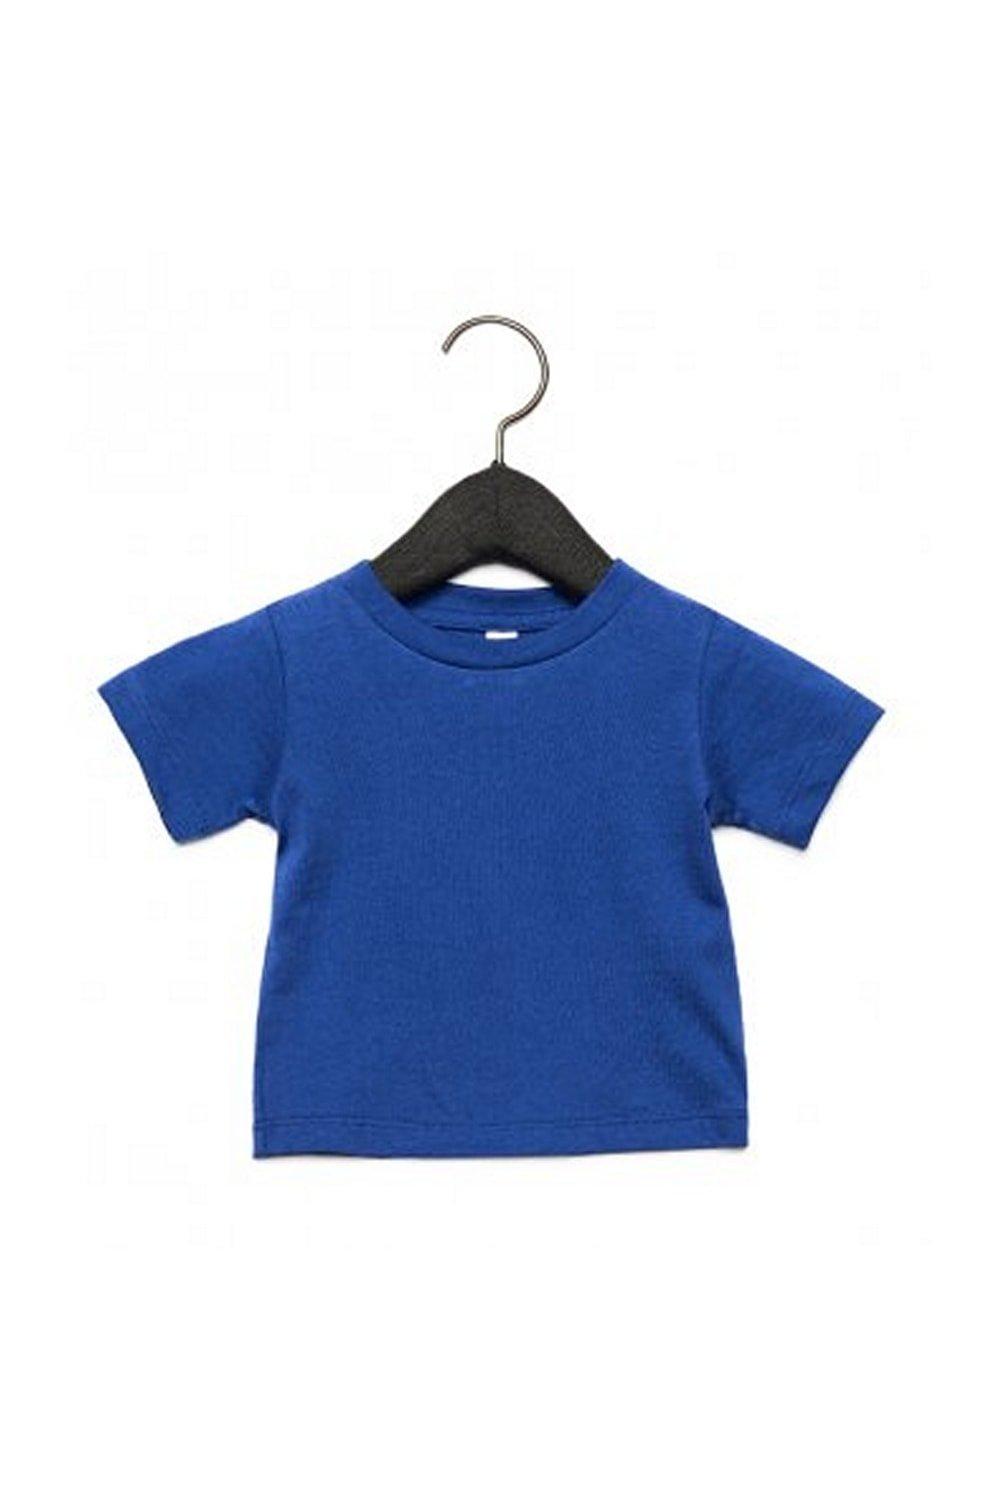 Детская футболка с круглым вырезом Bella + Canvas, синий